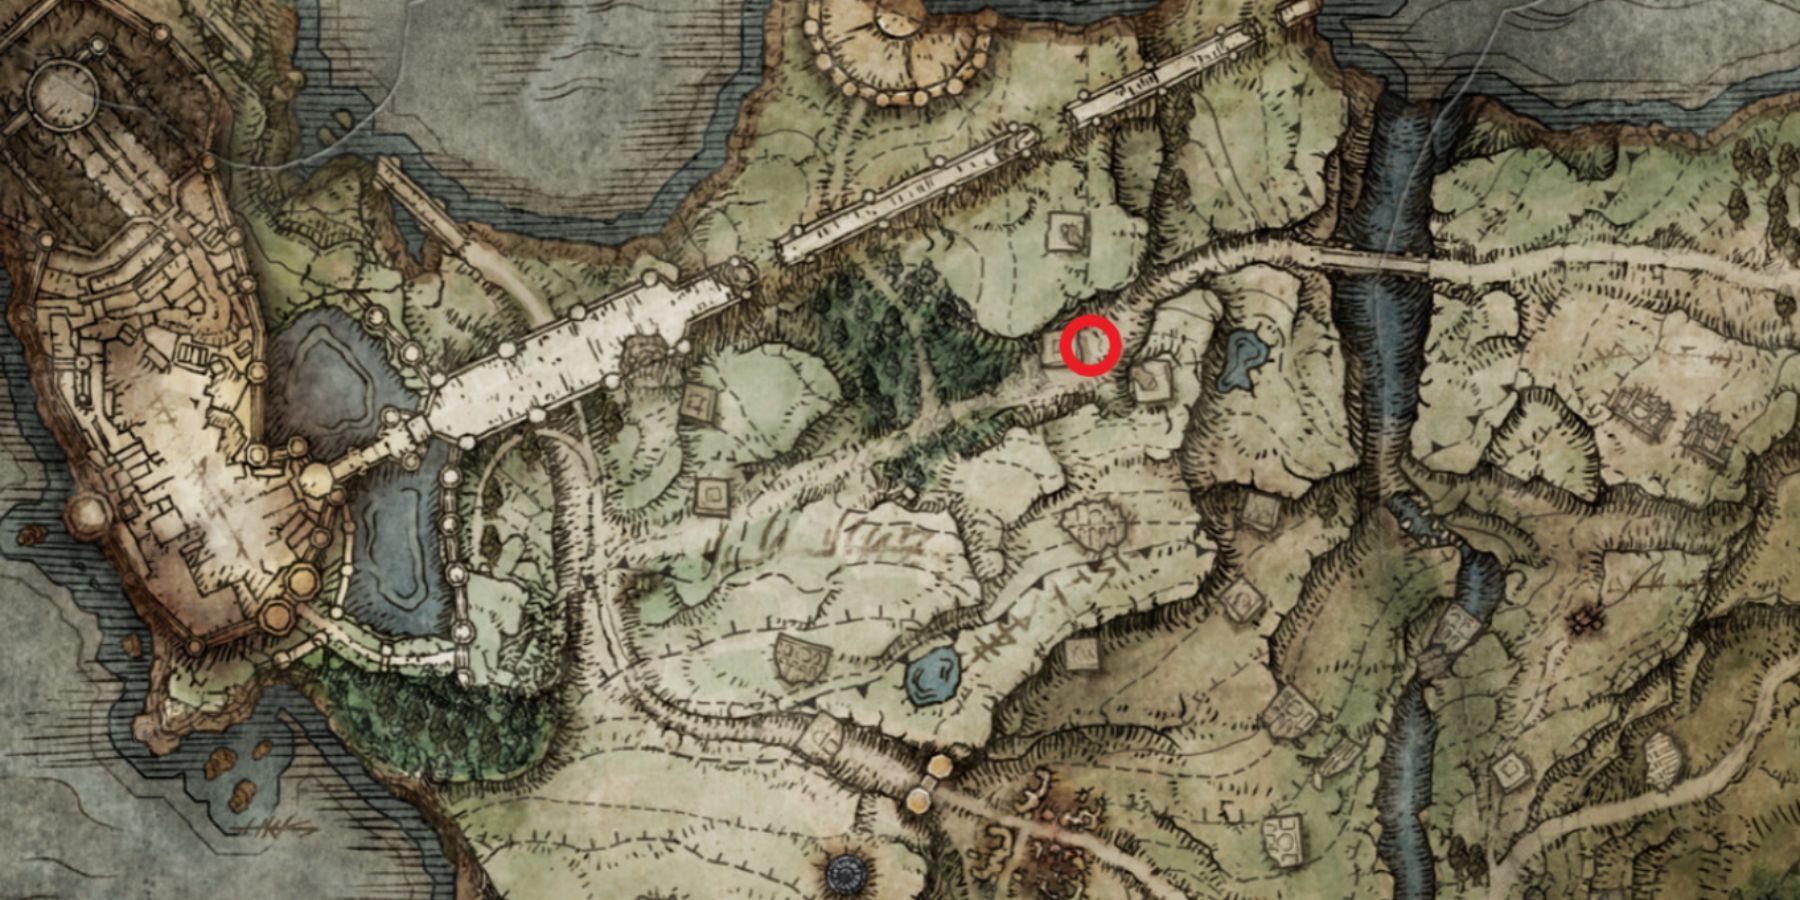 Местоположение щита с эмблемой зверя Beast Crest Heater на карте в игре Elden Ring